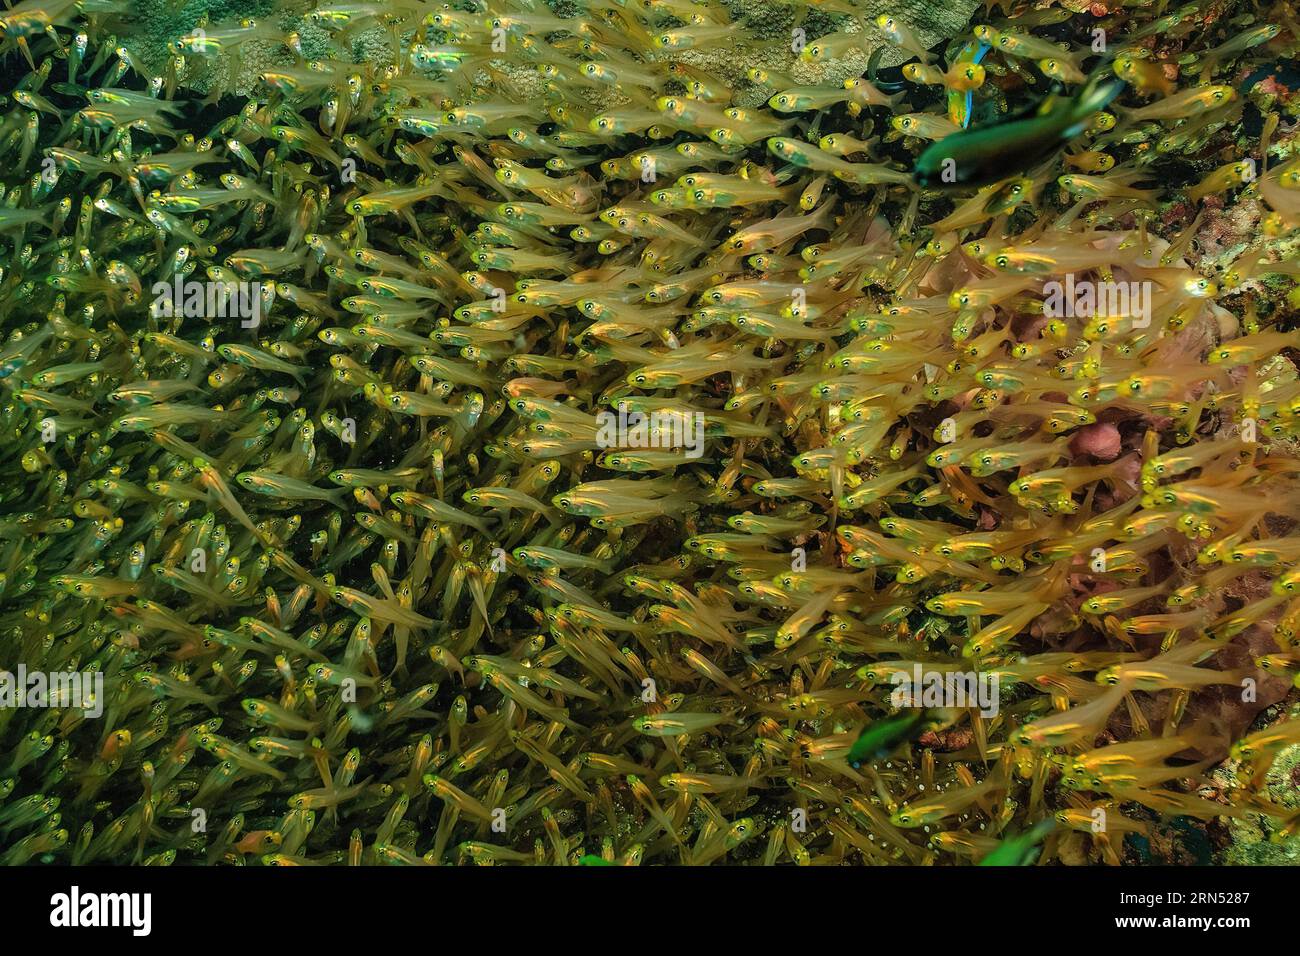 Secchio di spazzatrice pigmea (Parapriacanthus ransonneti) che nuota nella barriera corallina di fronte a piccoli coralli polipici di pietra (Acropora), Oceano Pacifico, Isola Yap Foto Stock